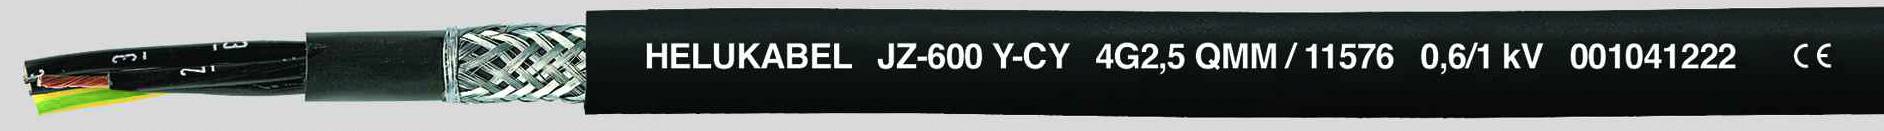 HELUKABEL JZ-600-Y-CY Steuerleitung 5 G 0.50 mm² Schwarz 11467-500 500 m